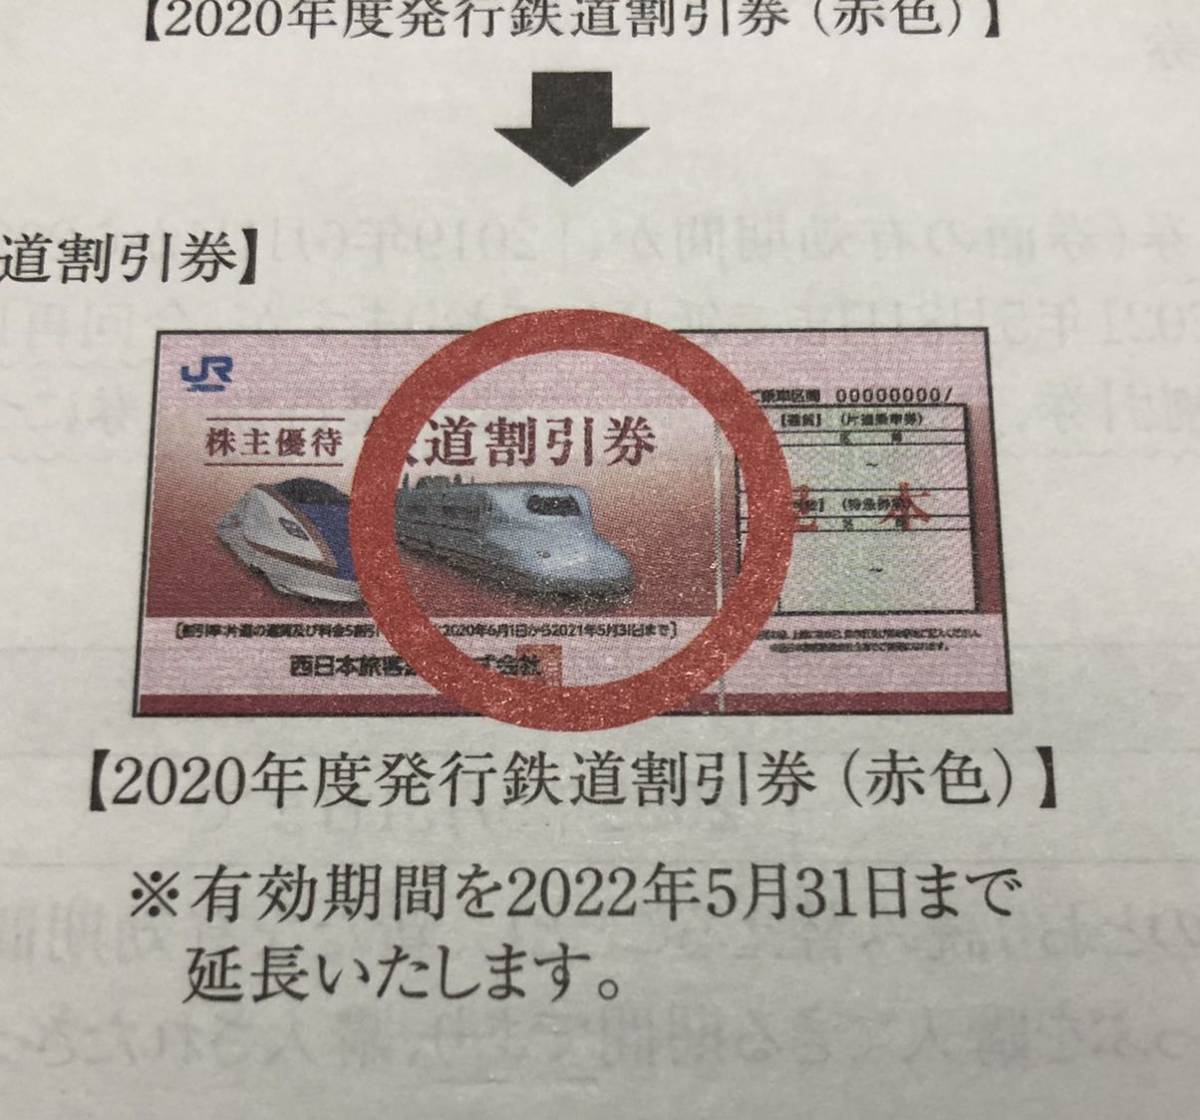 JR西日本株主優待券 2022年5月31日ま 延長 普通郵便なら(優待券、割引 